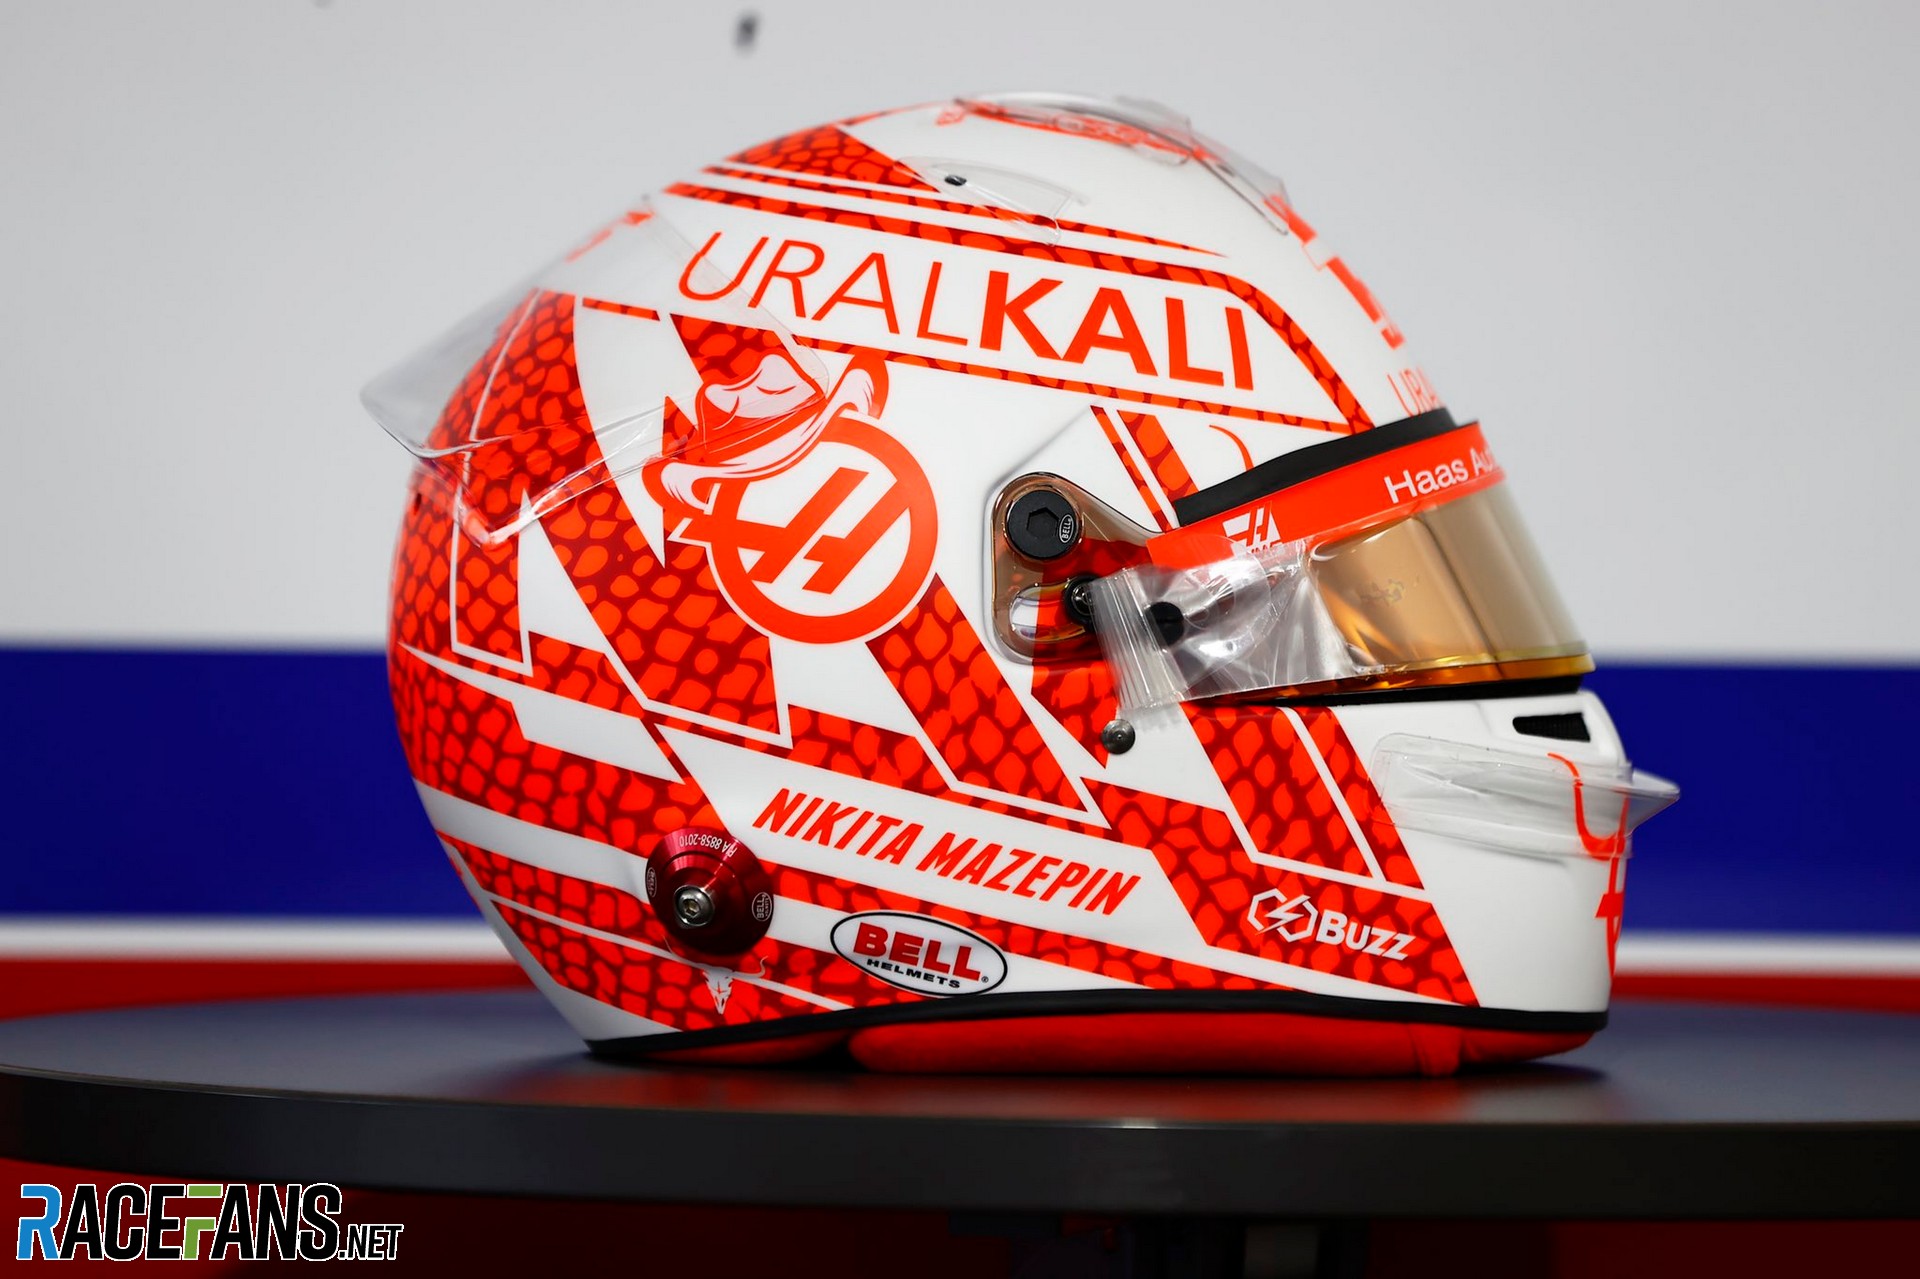 Nikita Mazepin's 2021 United States Grand Prix helmet